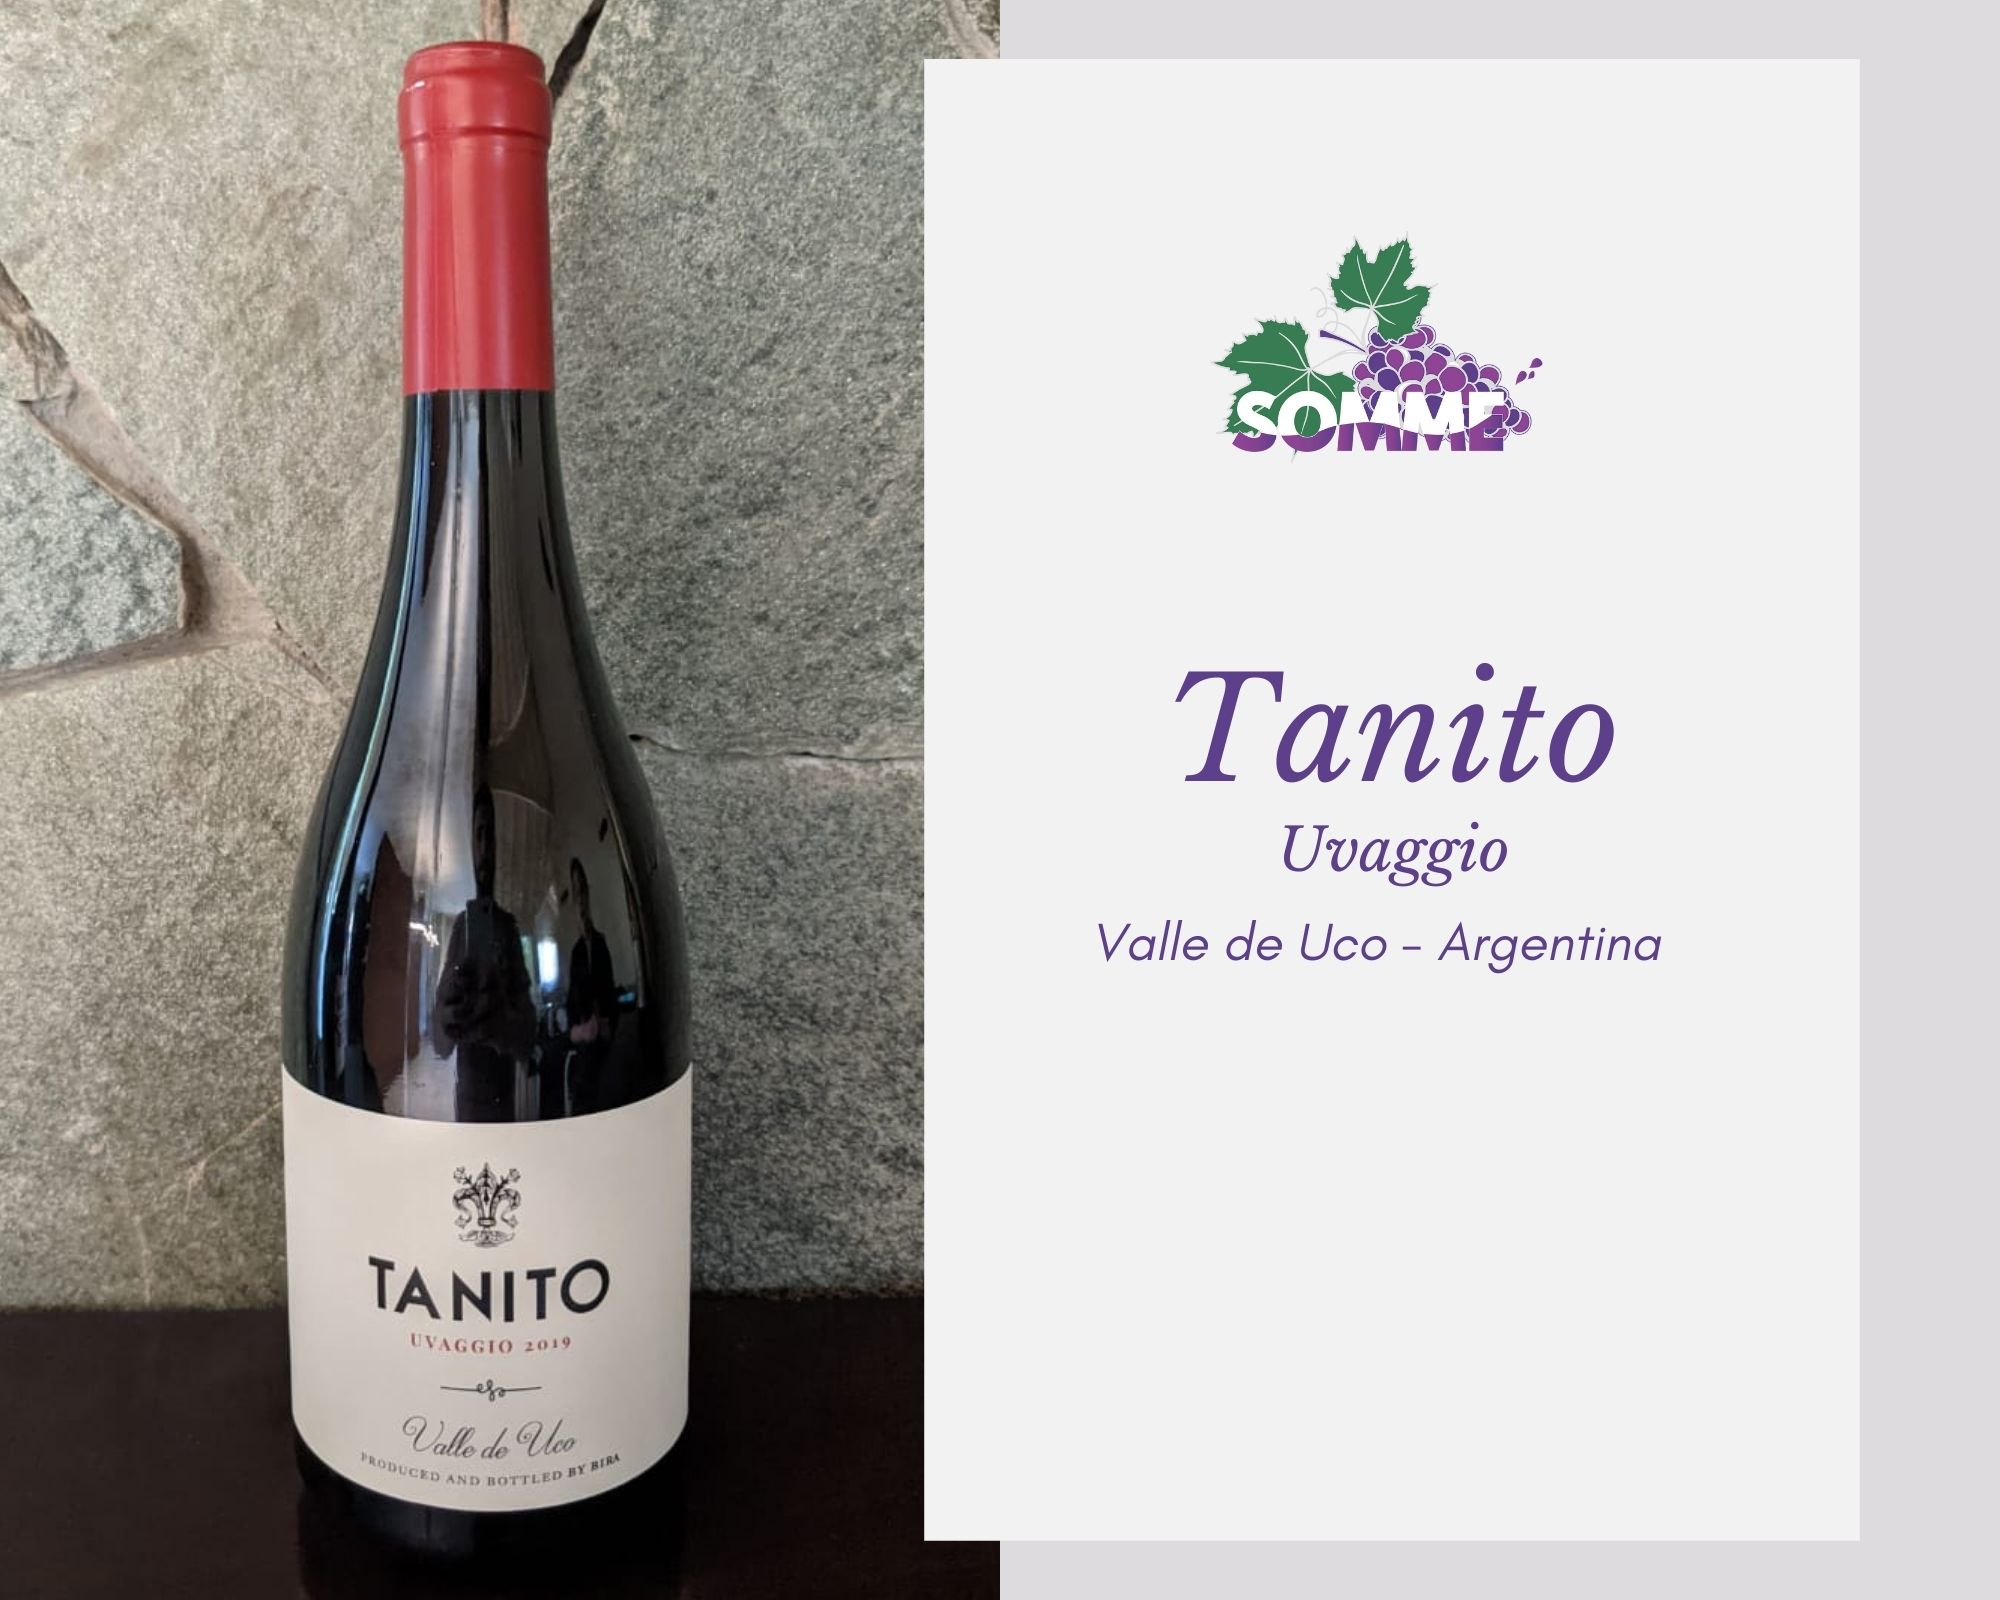 Tanito Uvaggio 2019 Bira wines